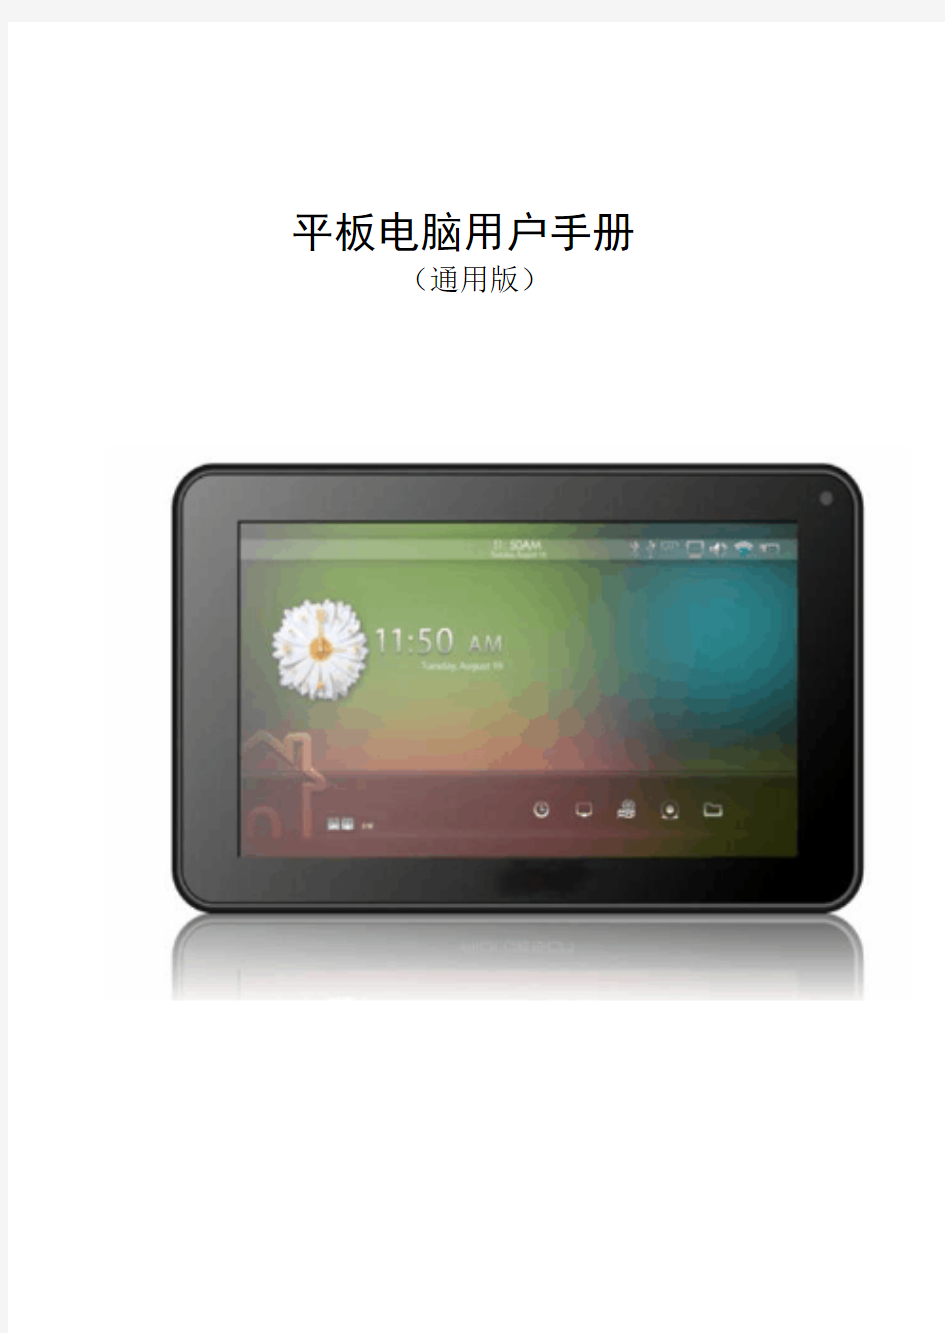 7寸平板电脑最新中文说明书(安卓4.1)通用版。